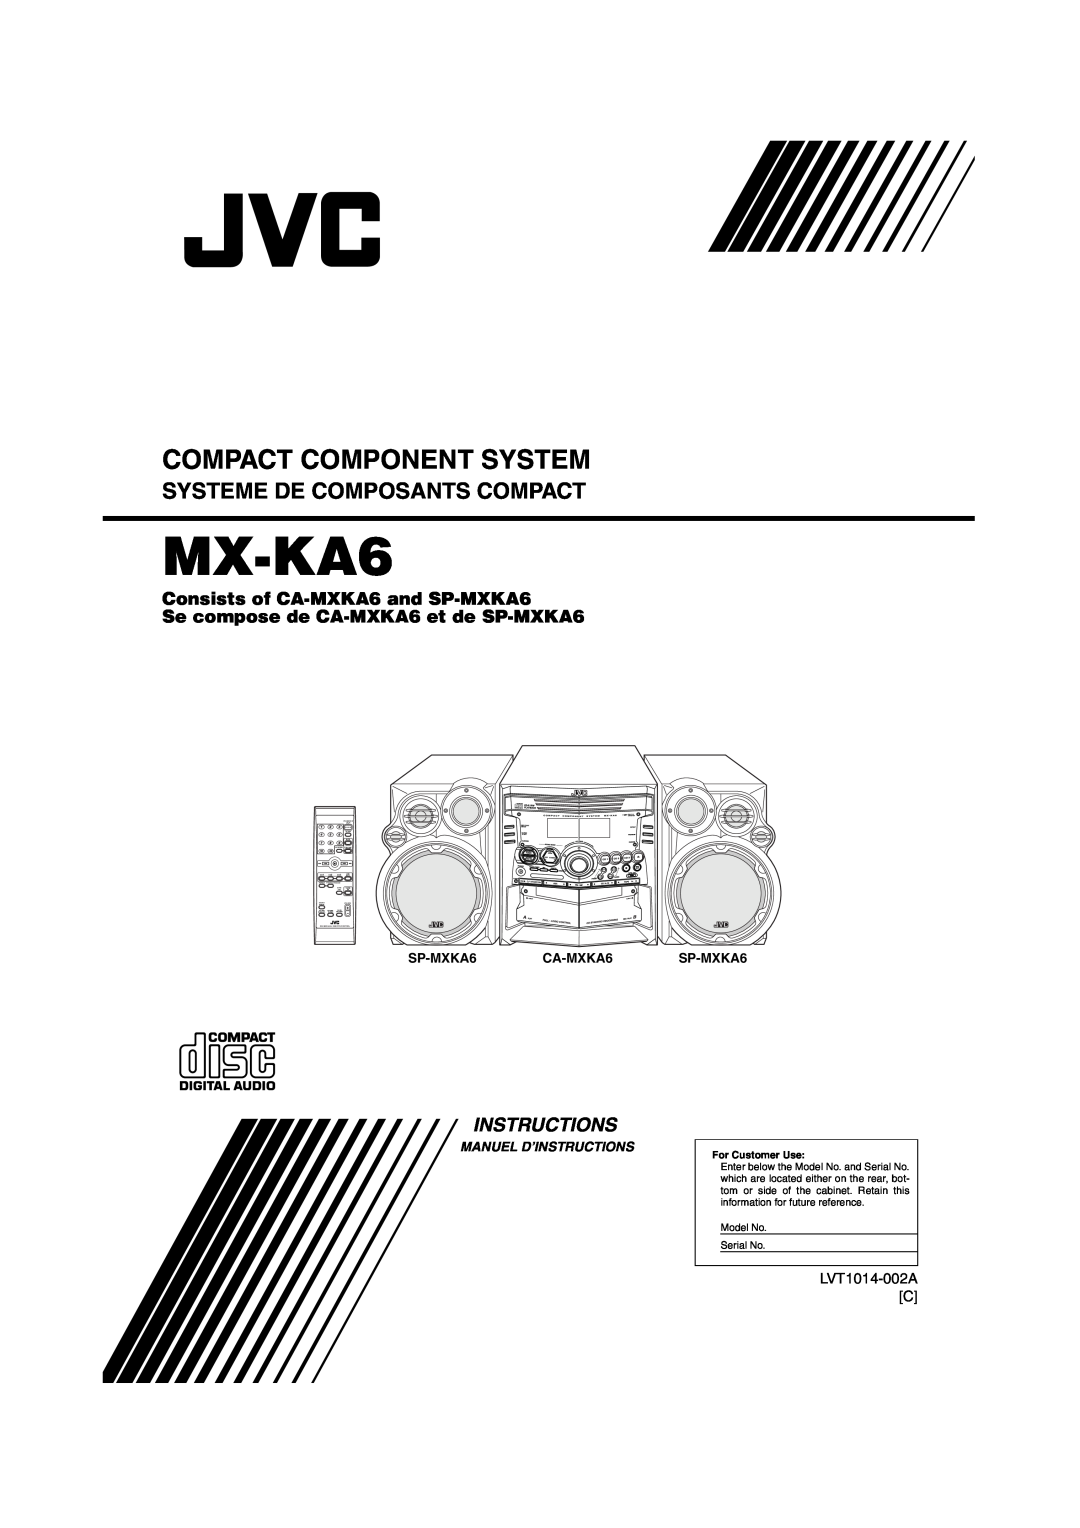 JVC MX-KA6 manual Consists of CA-MXKA6and SP-MXKA6, Se compose de CA-MXKA6et de SP-MXKA6, Compact Component System, Tape 